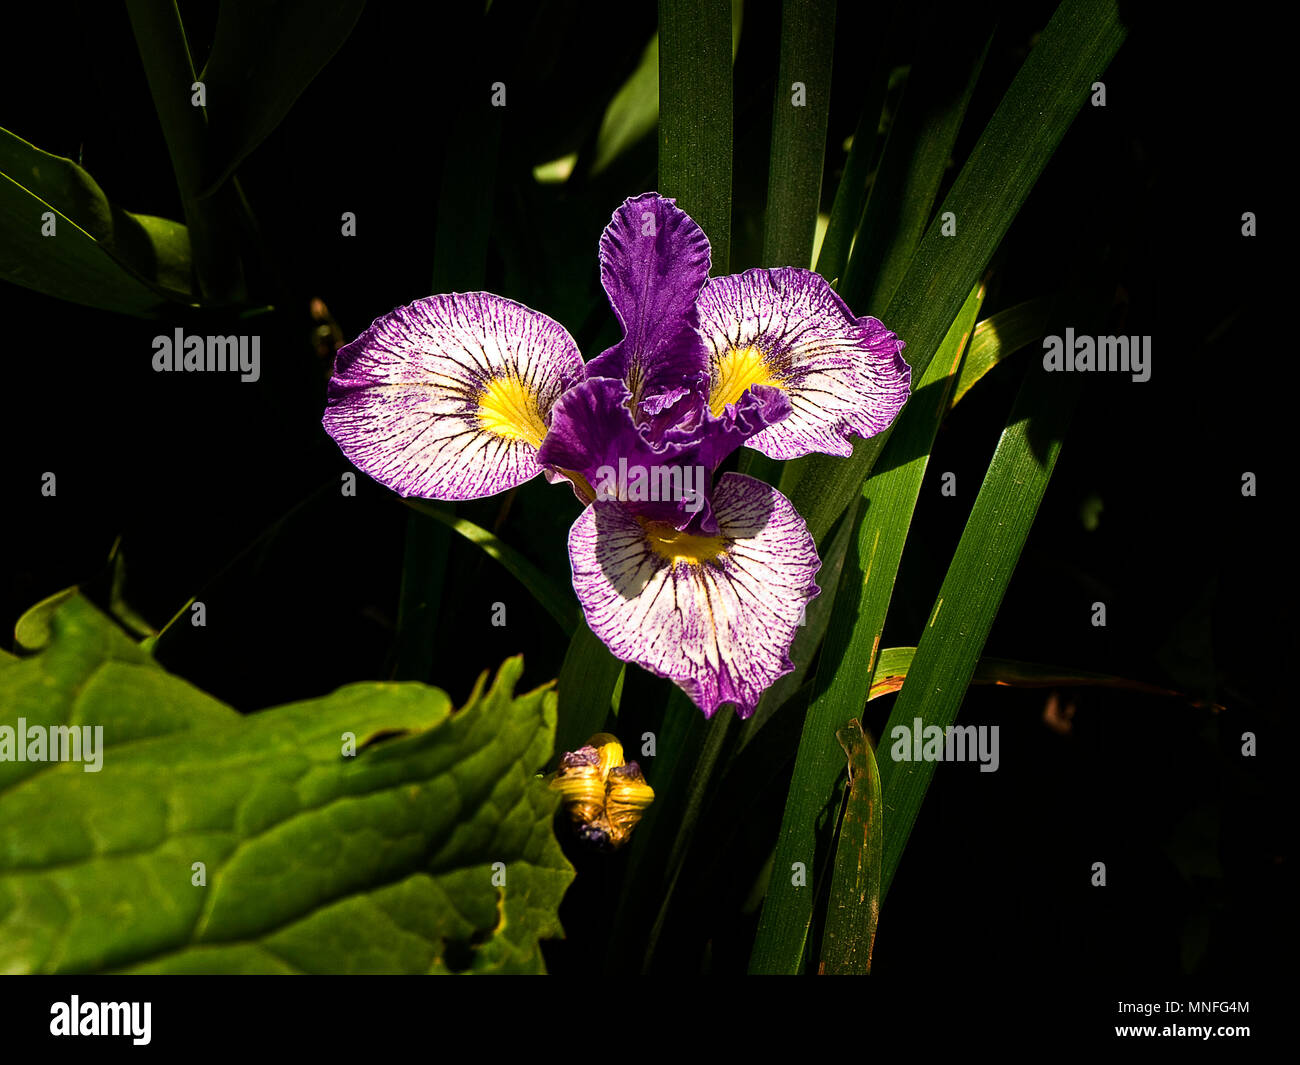 Iris flower (Iridaceae) Stock Photo